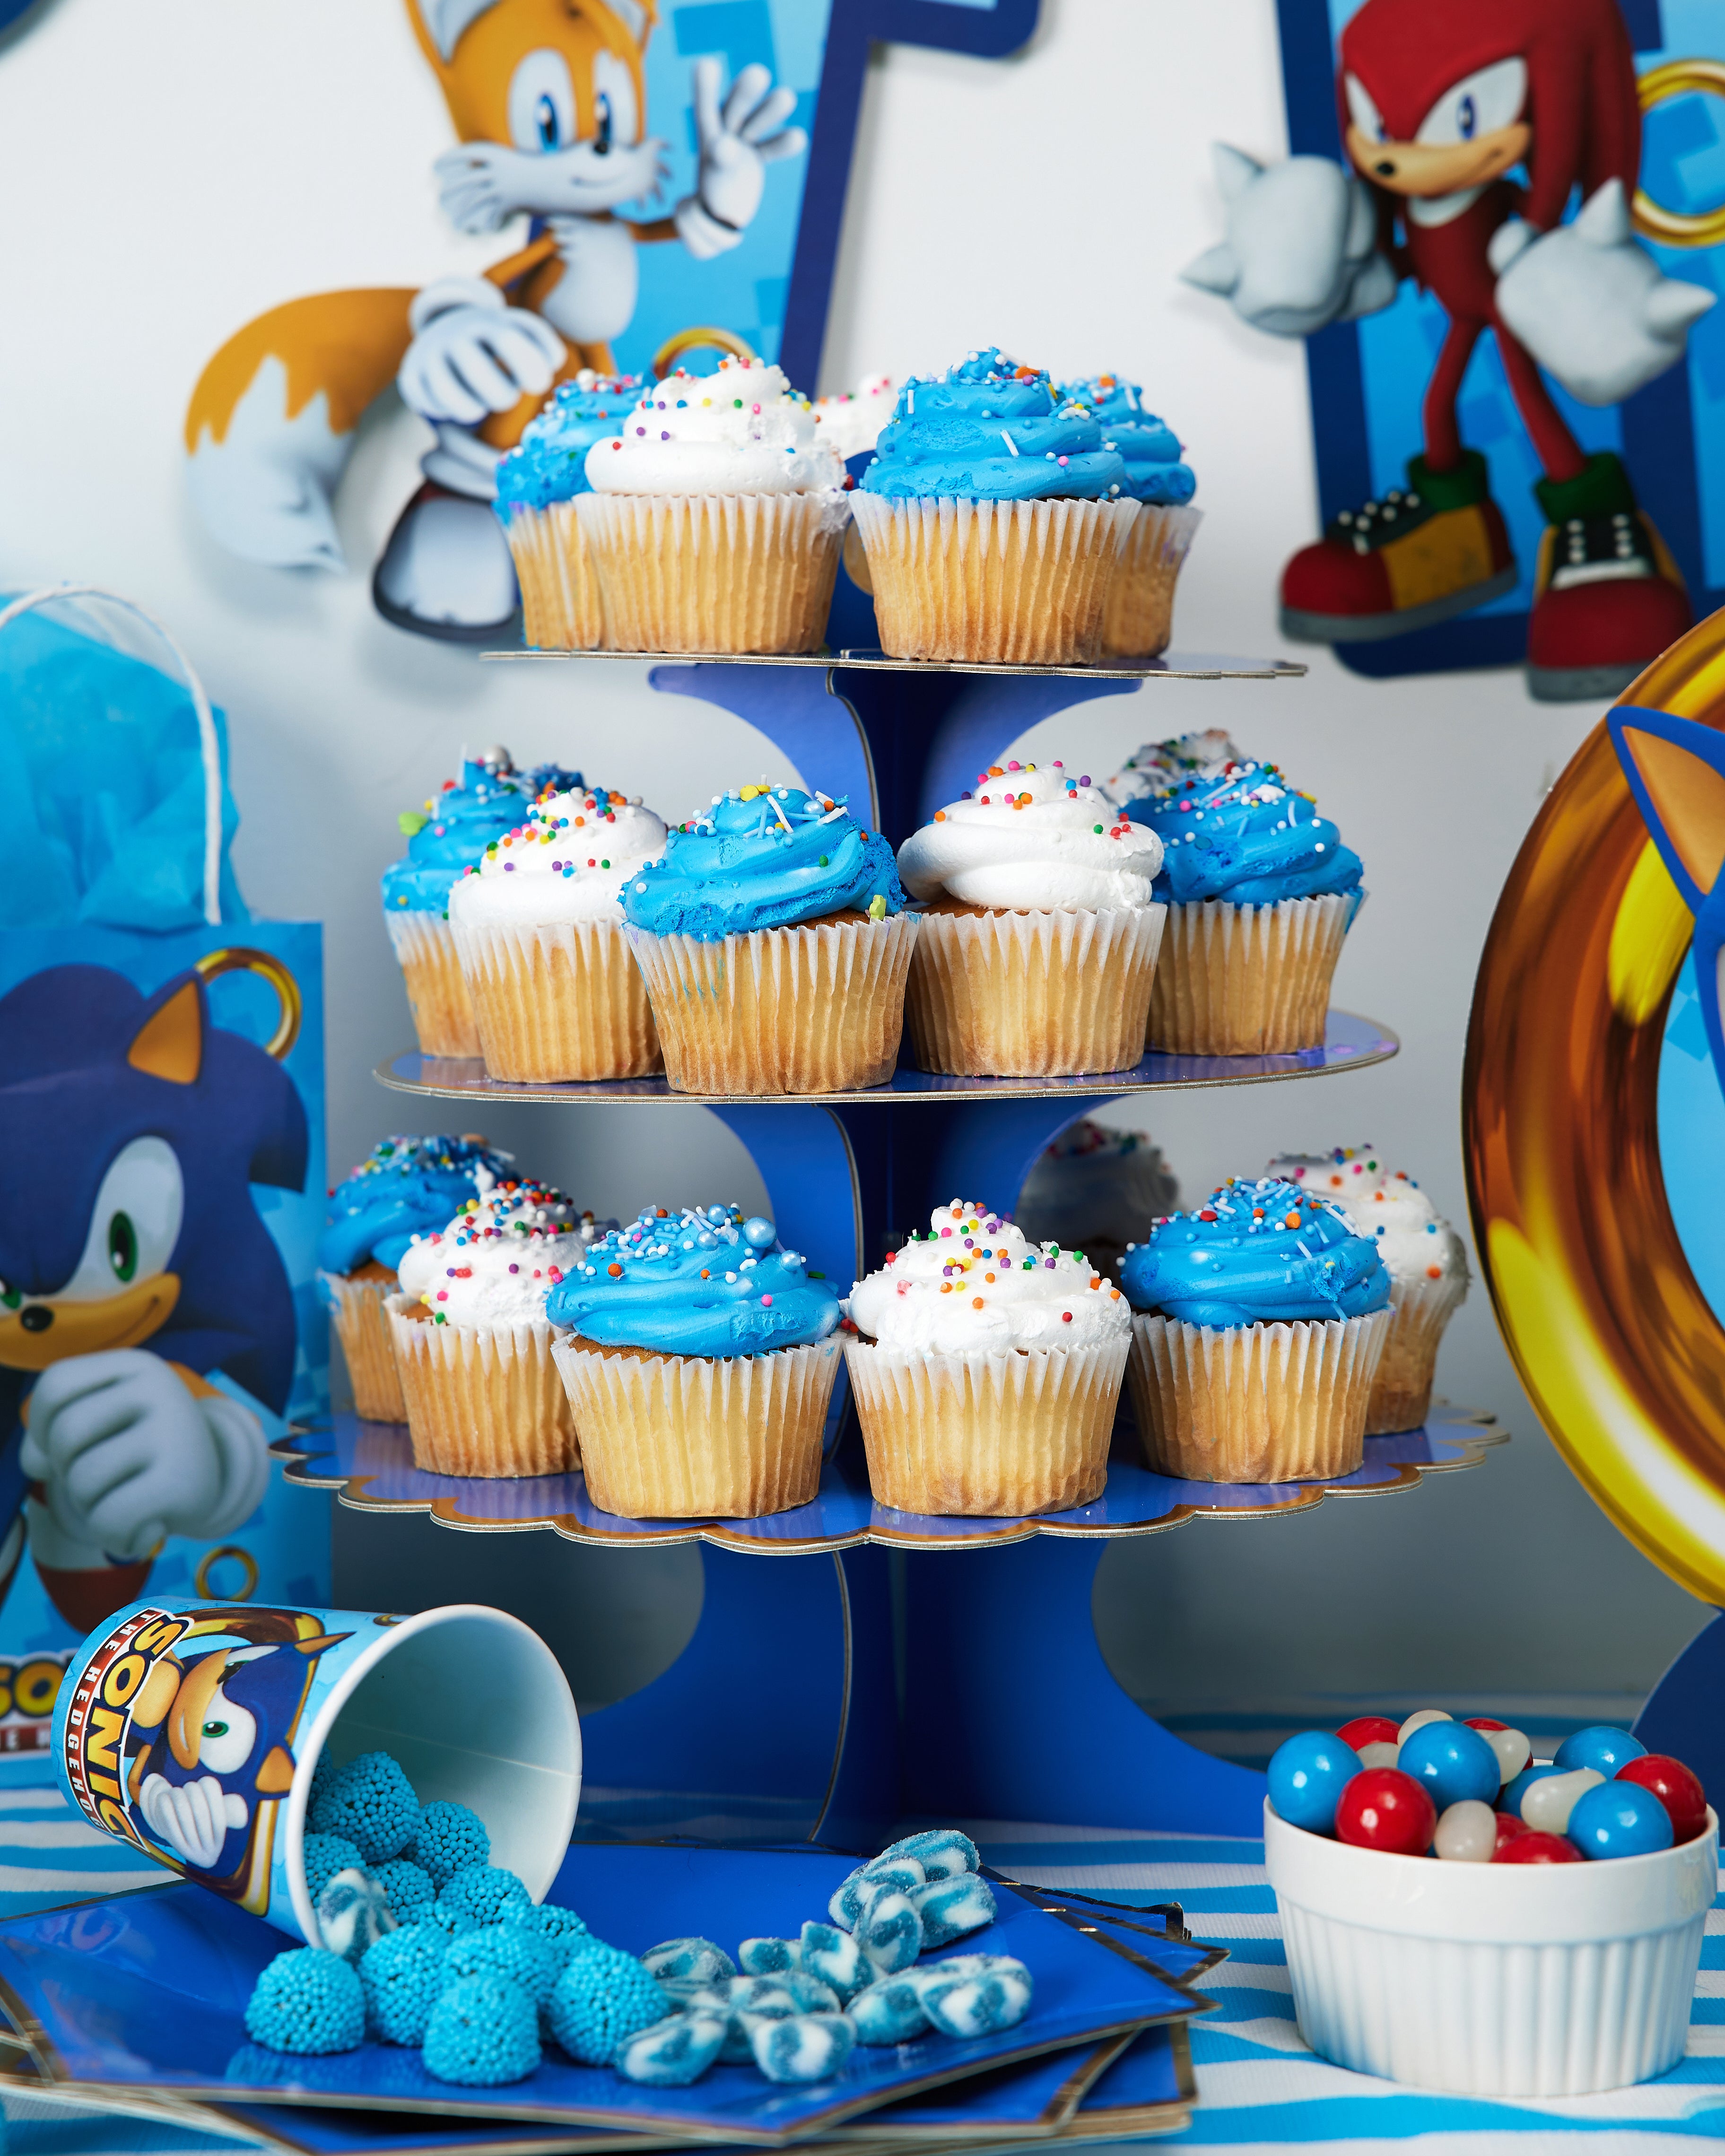 Decoration Sonic Anniversaire, Sonic Party Decoration Supplies